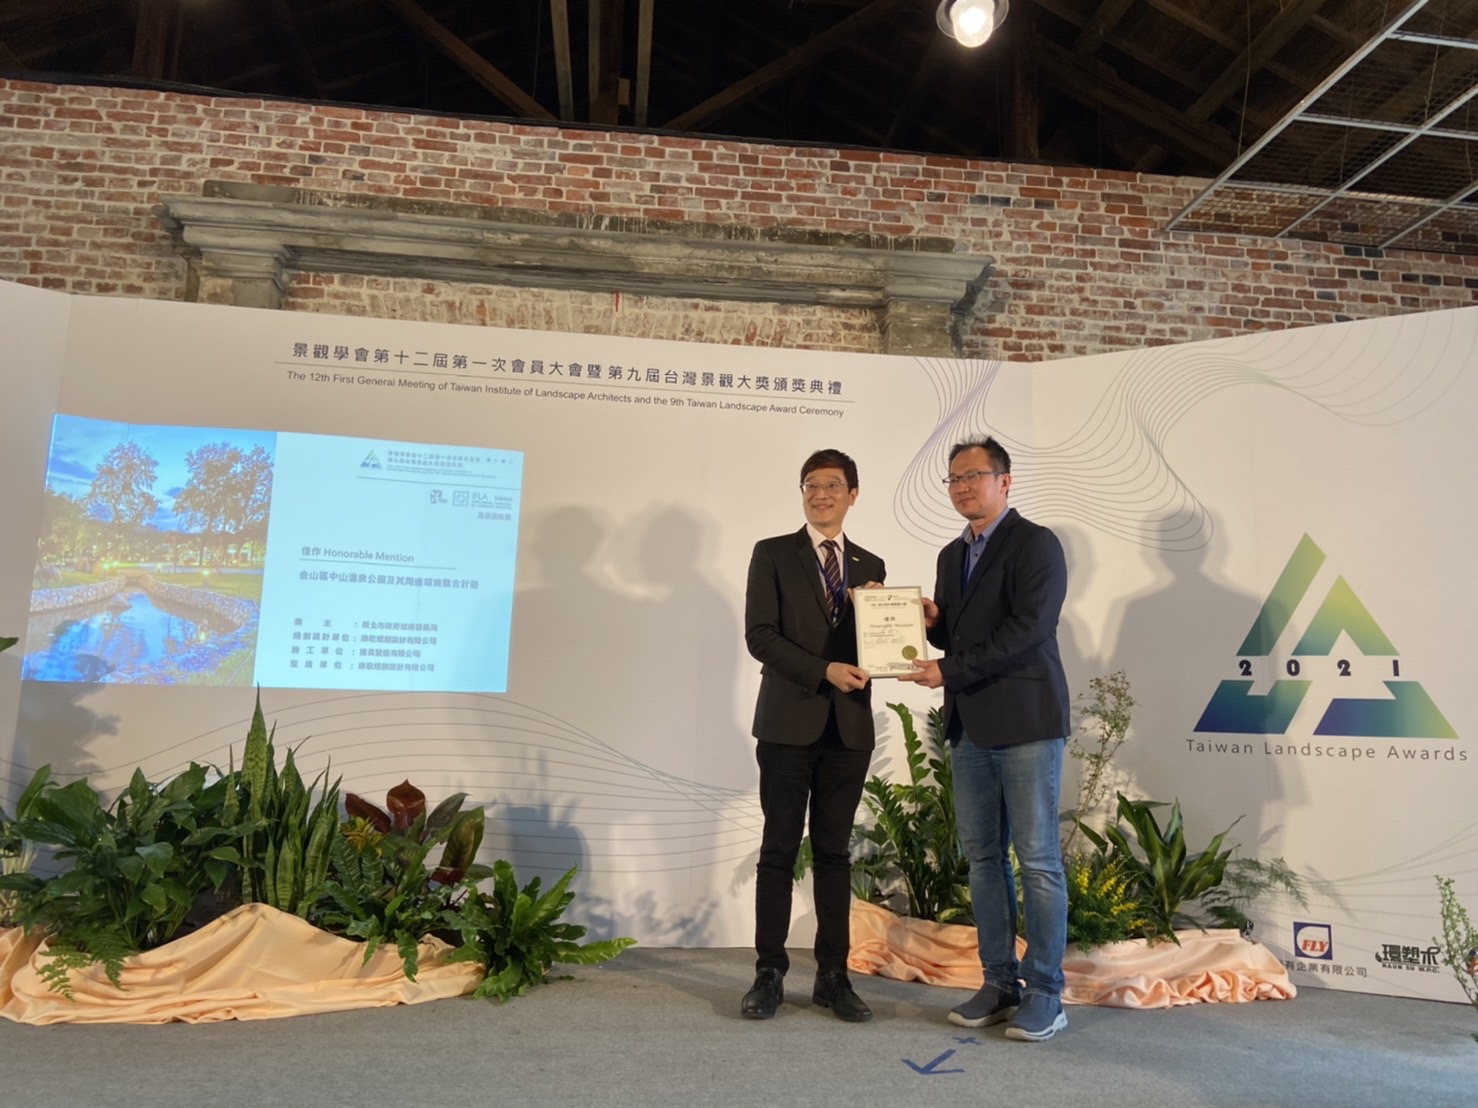 中山溫泉公園榮獲第九屆台灣景觀大獎殊榮